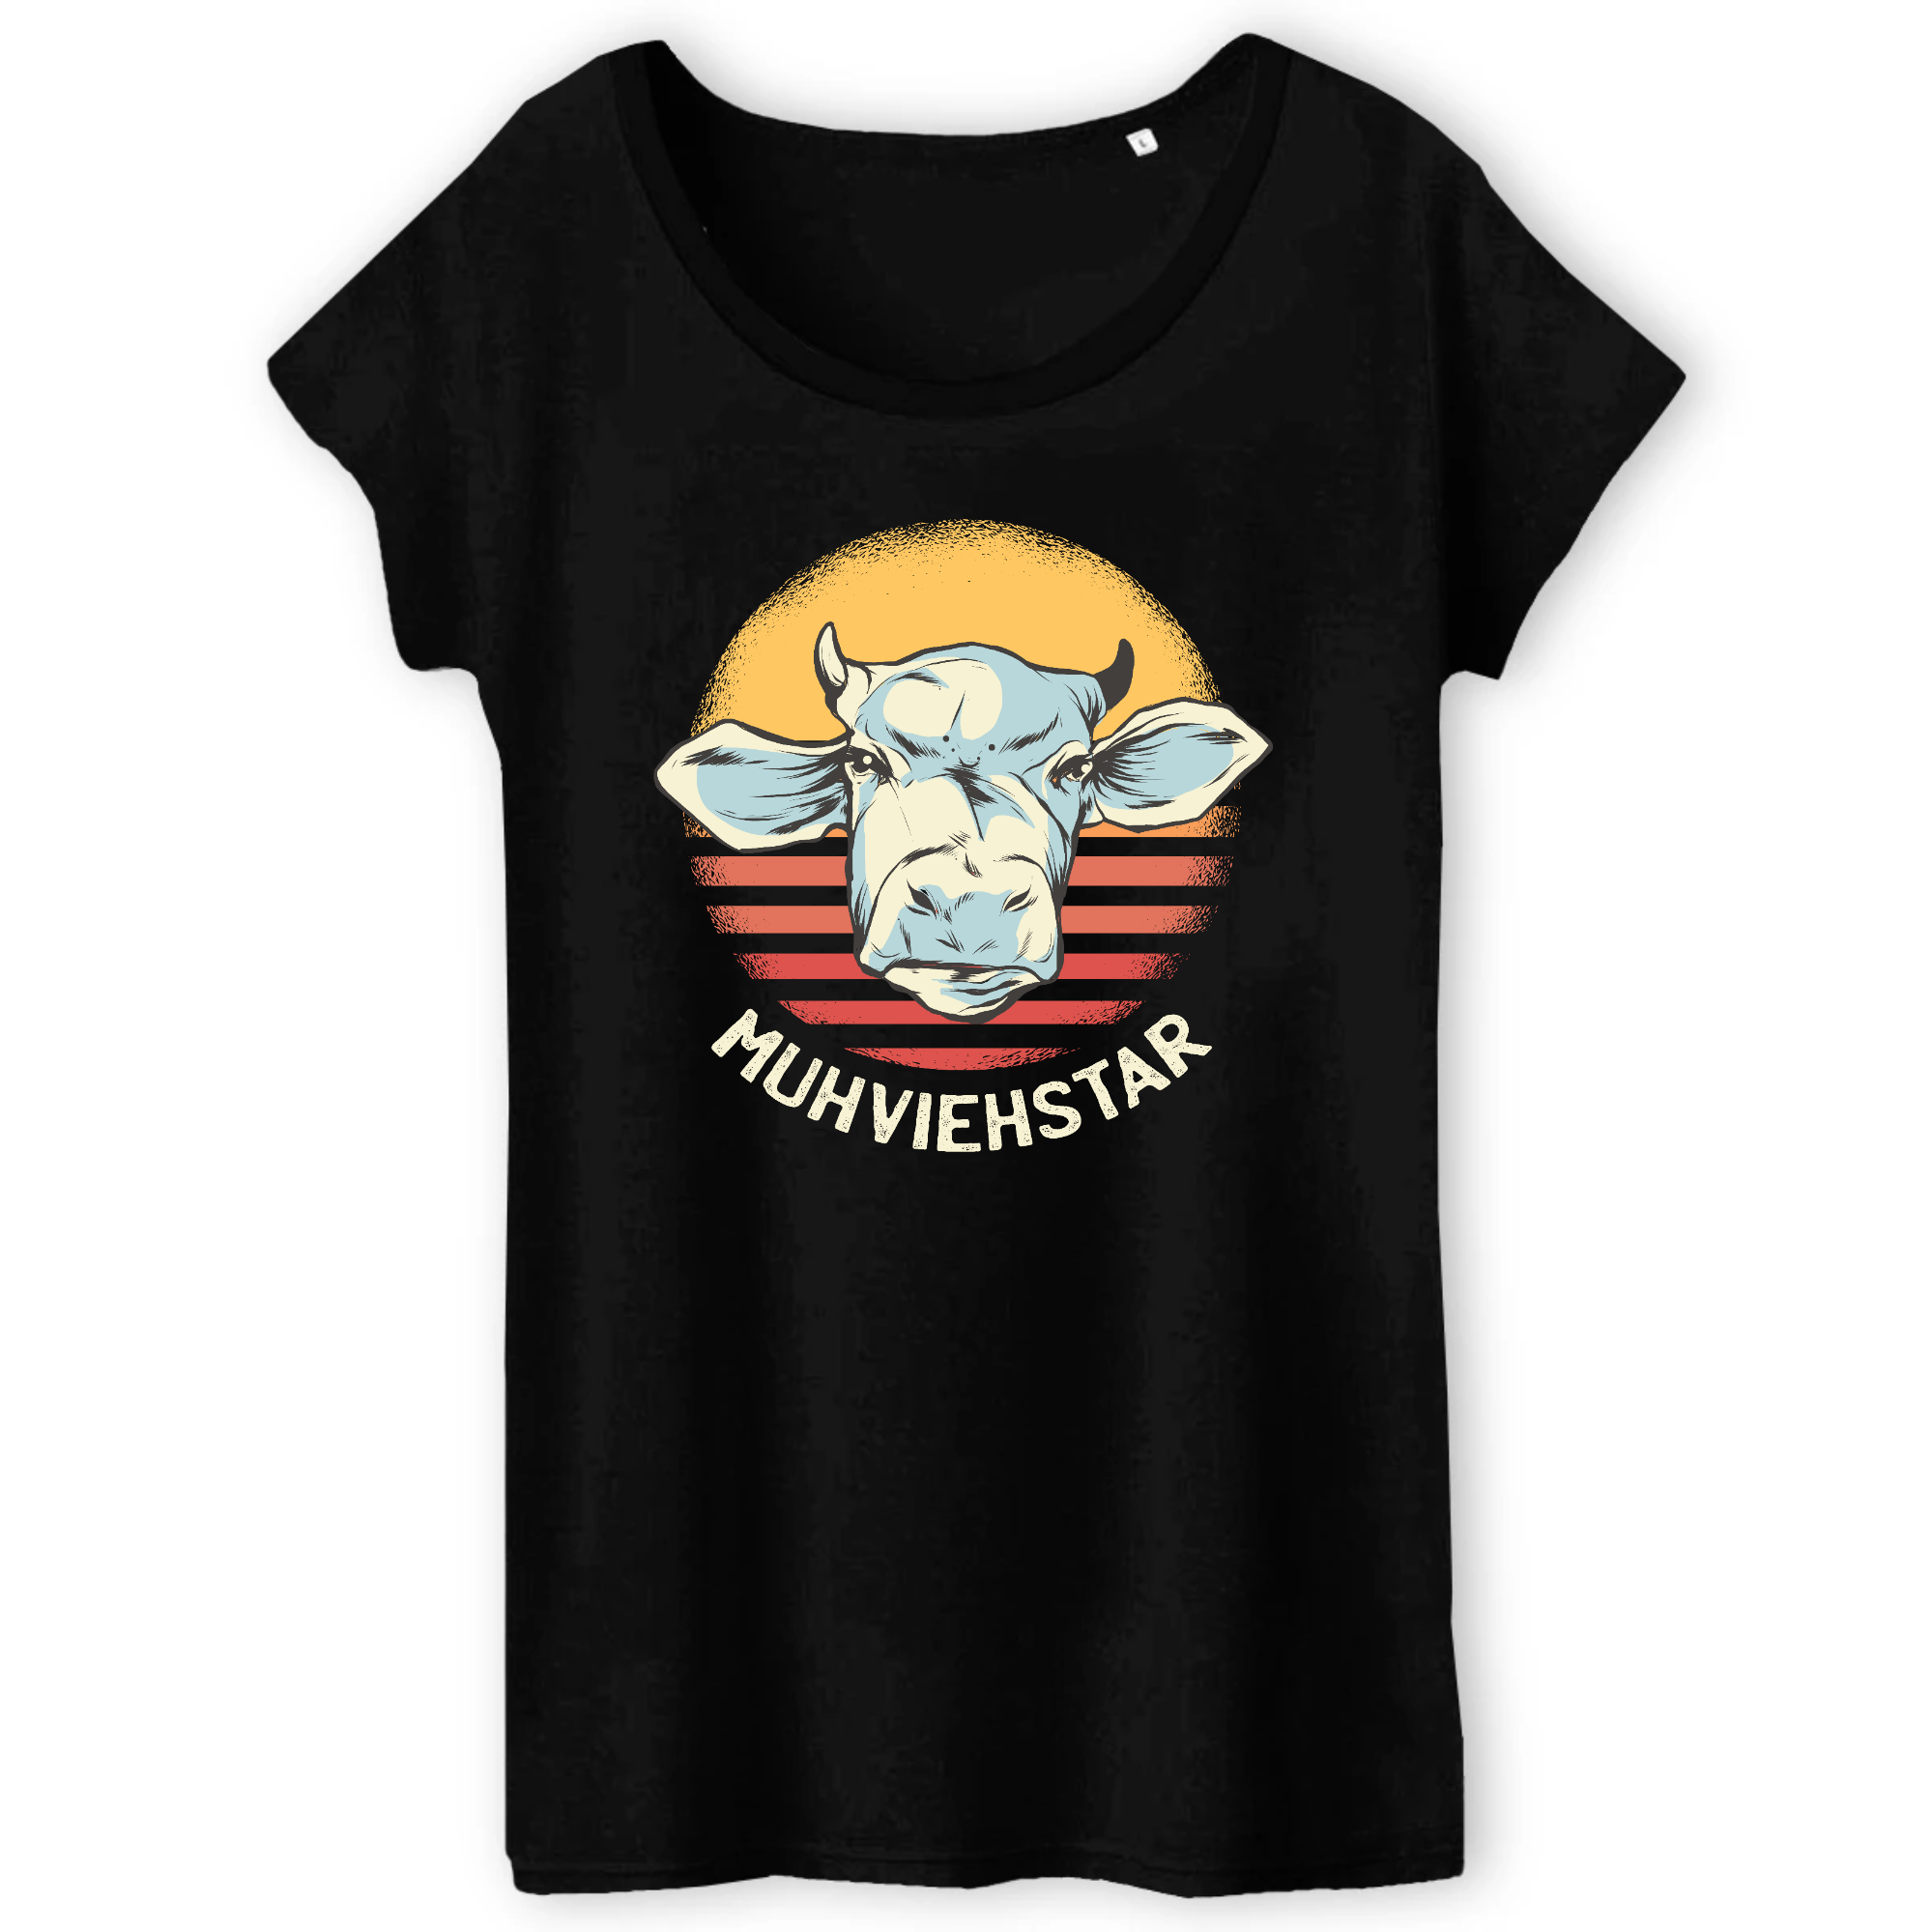 T-Shirt-BIO-MUHVIEHSTAR-Women